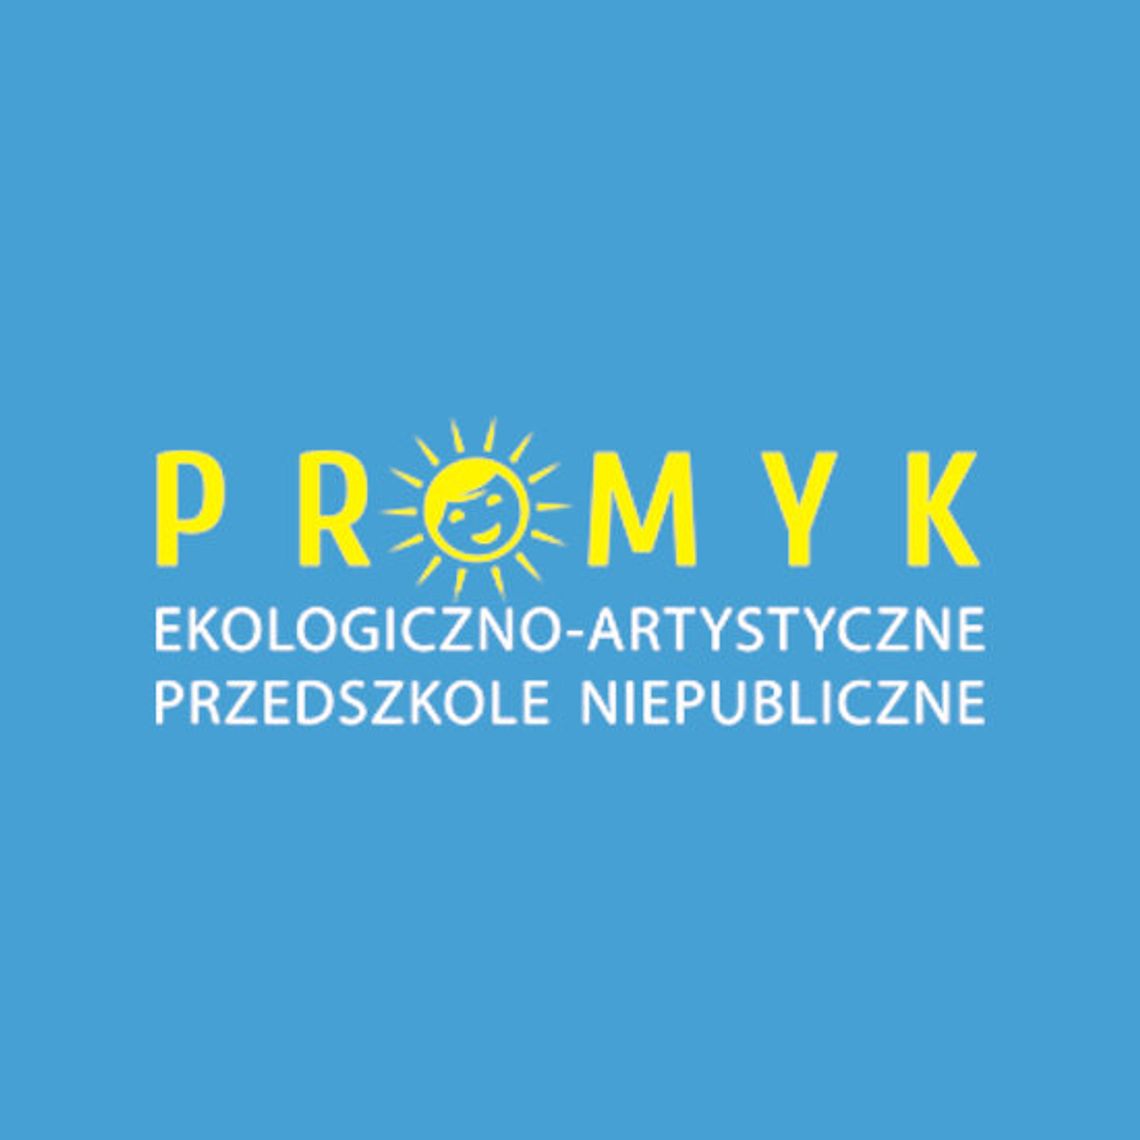 Ekologiczno-Artystyczne Przedszkole Niepubliczne „PROMYK” S.C.